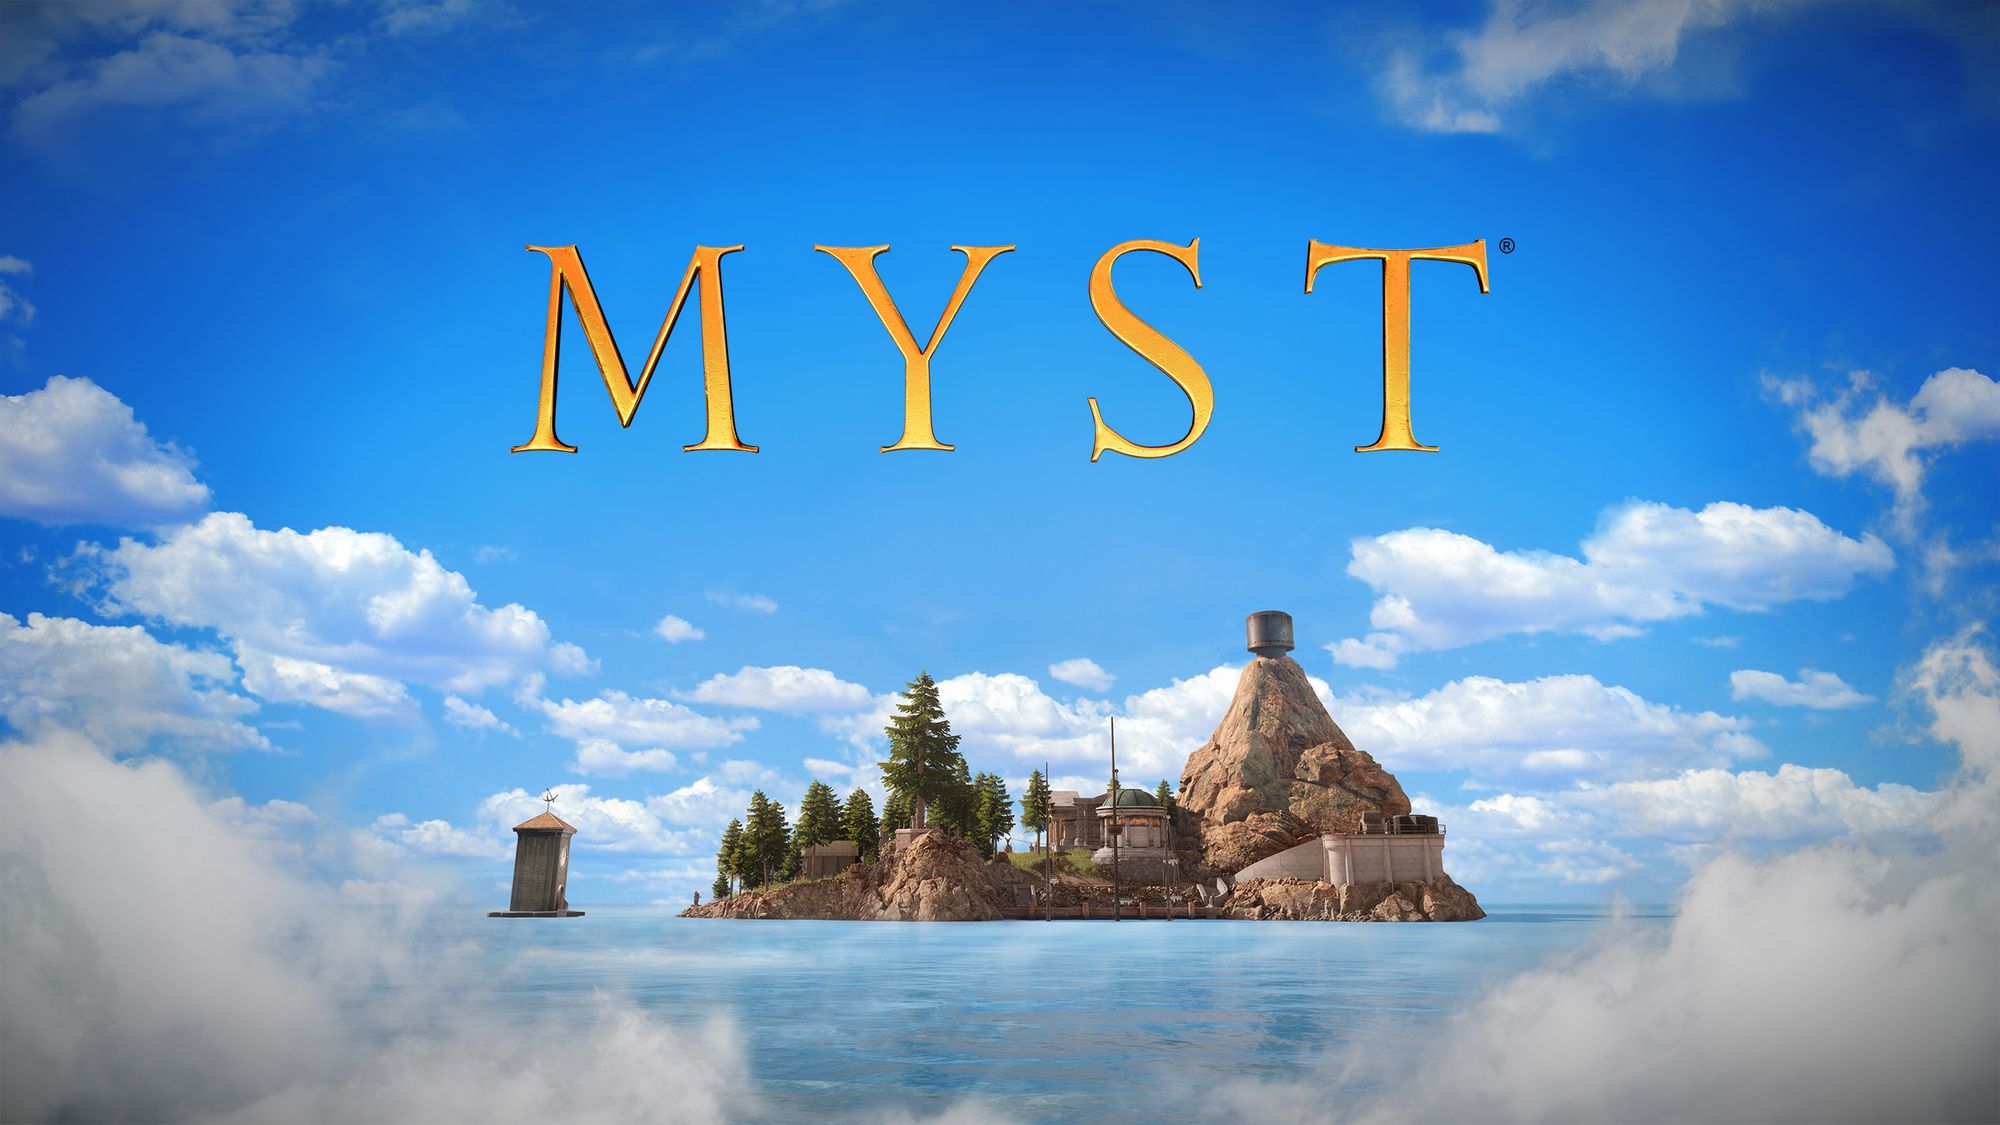 Игра-головоломка Myst вышла на iPhone и iPad